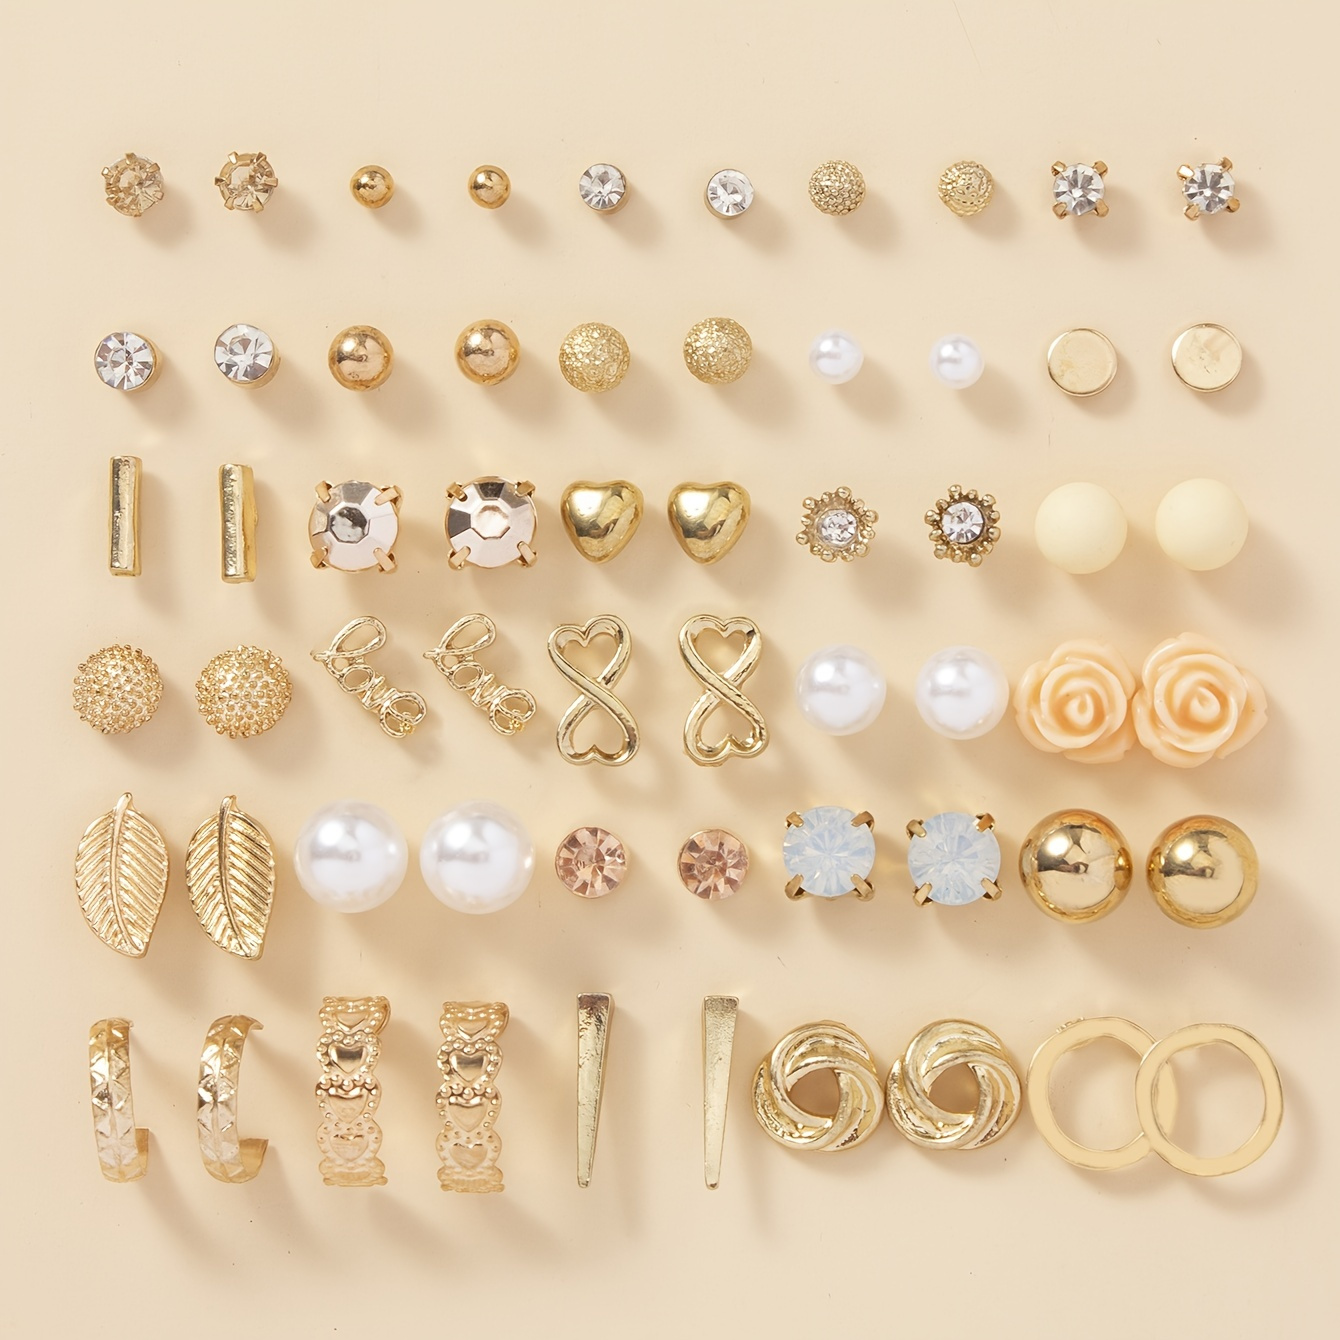 

30pairs/set Golden Earrings Decorative Jewelry Hoop Earrings Delicate Flower Leaf Stud Earrings Women Gifts